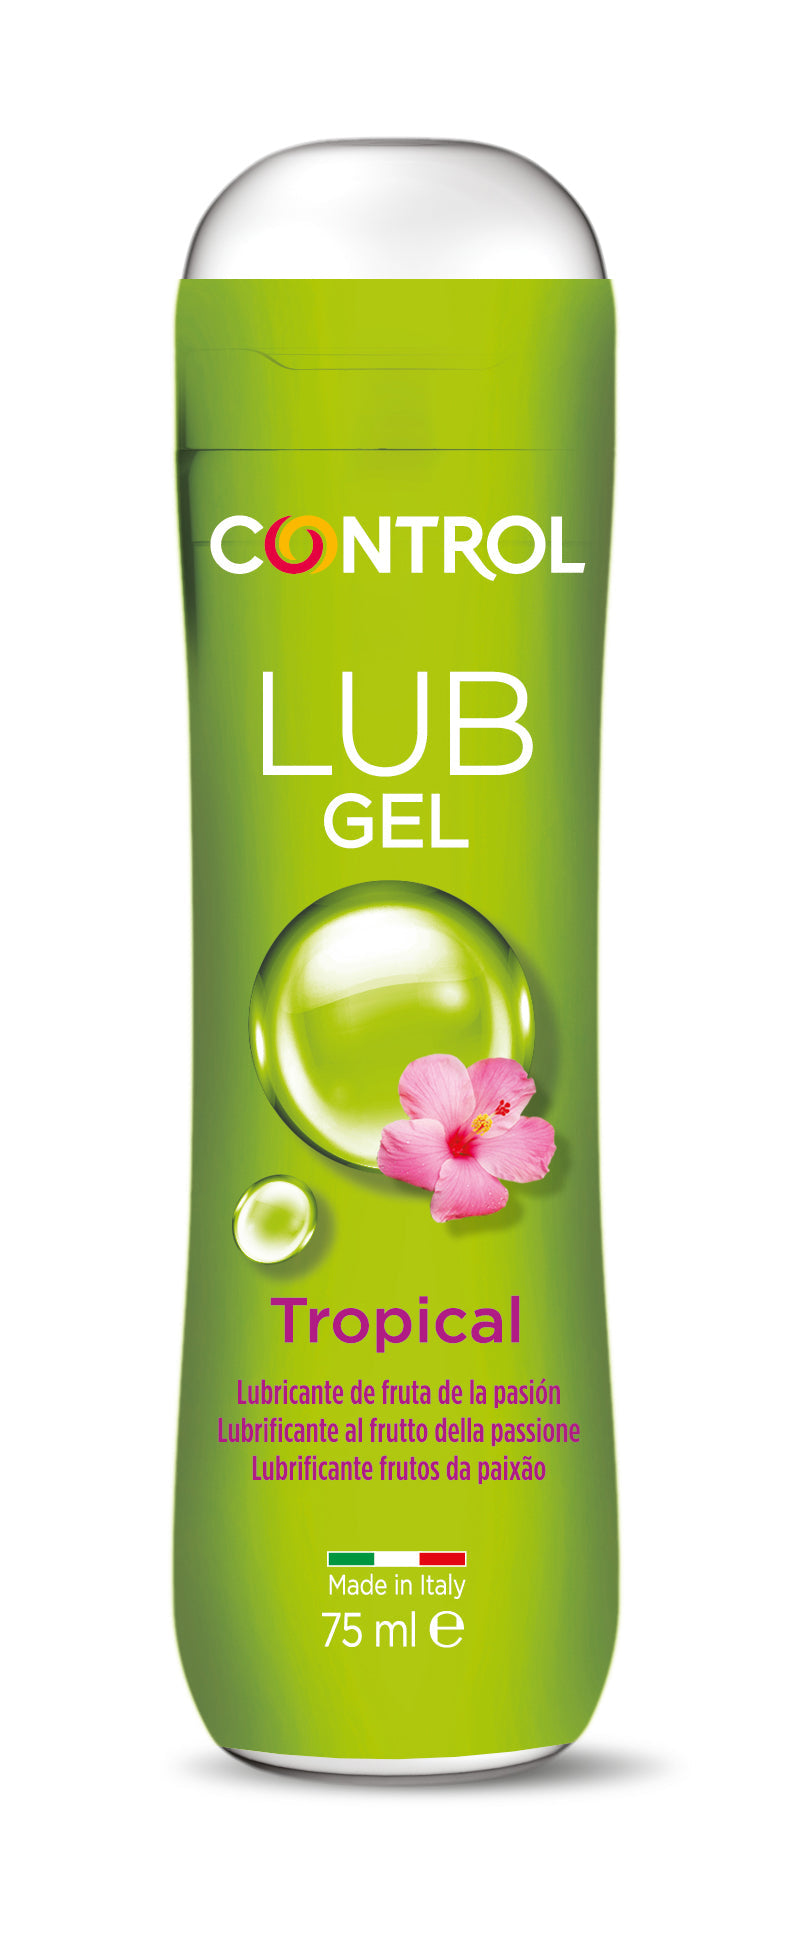 Control Gel Lubrificante Tropical 75 ml - lubrificante íntimo à base de água com ingredientes naturais de aloe vera e camomila